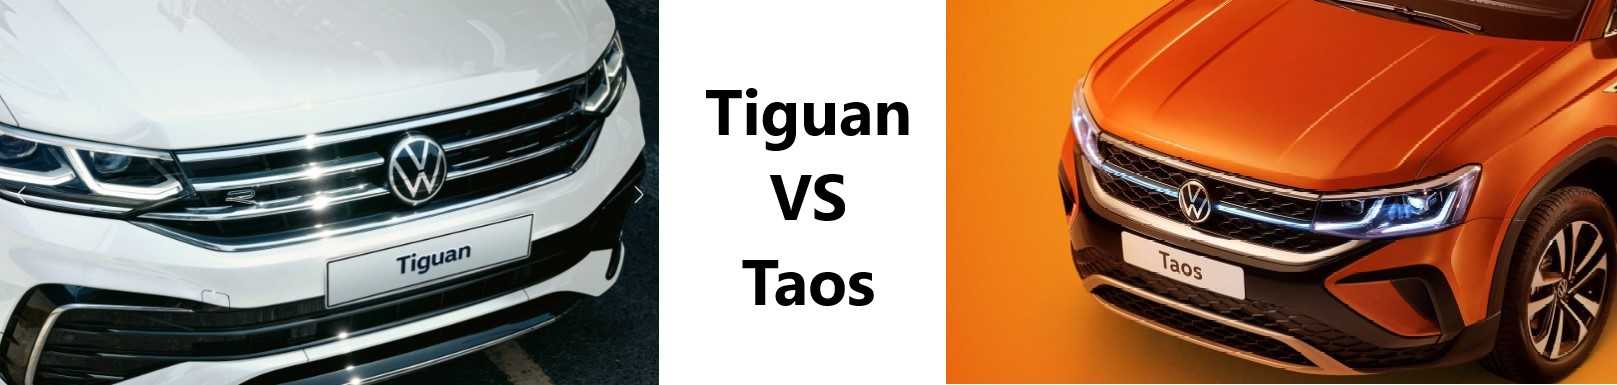 Какой автомобиль окажется лучше Детальное сравнение Volkswagen Tiguan и Volkswagen Taos Чем они отличаются и что между ними общего Основные технические и эксплуатационные характеристики Актуальные цены в 2022 году и комплектации